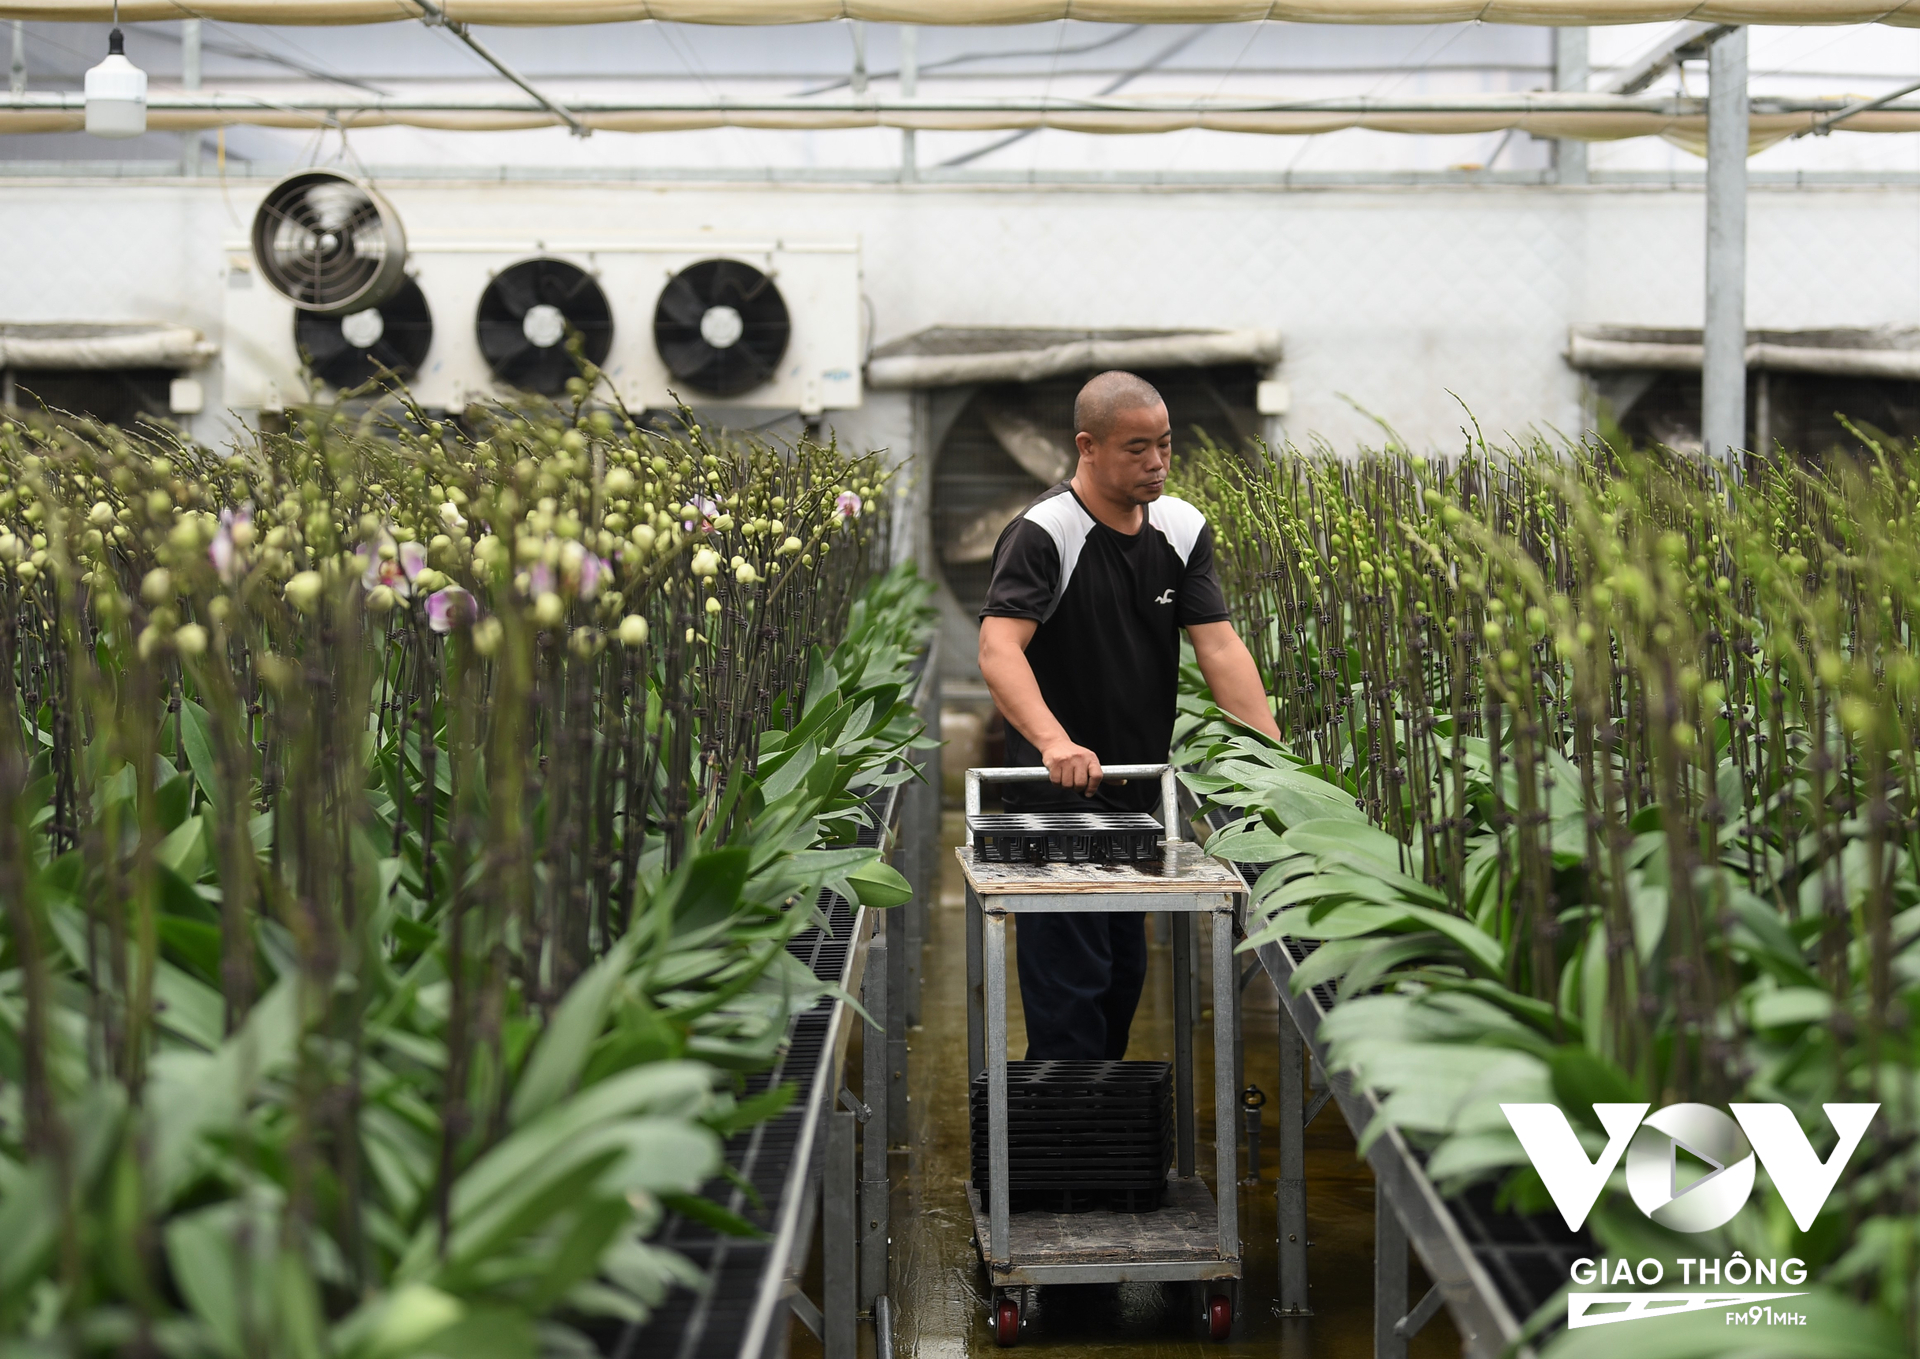 Nhiều người dân trên địa bàn huyện Mê Linh đã mạnh dạn đầu tư những nhà vườn trồng hoa hồng lớn và quy mô, thể hiện sự chuyên nghiệp, liên kết các hộ dân của huyện cùng làm nghề trồng hoa, cùng chung tay tạo nên thương hiệu nhà vườn nổi tiếng.